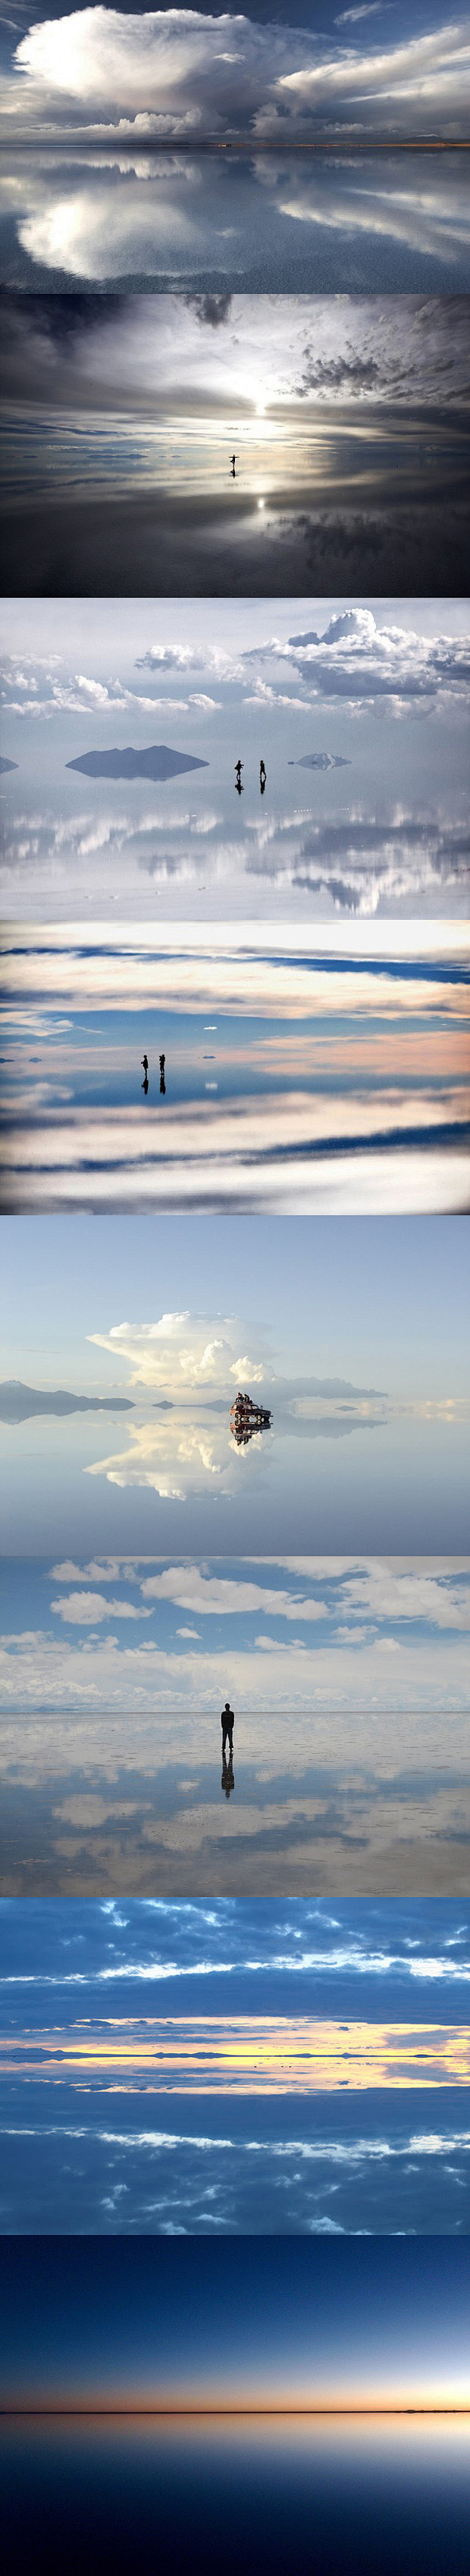 玻利维亚 乌尤尼盐湖